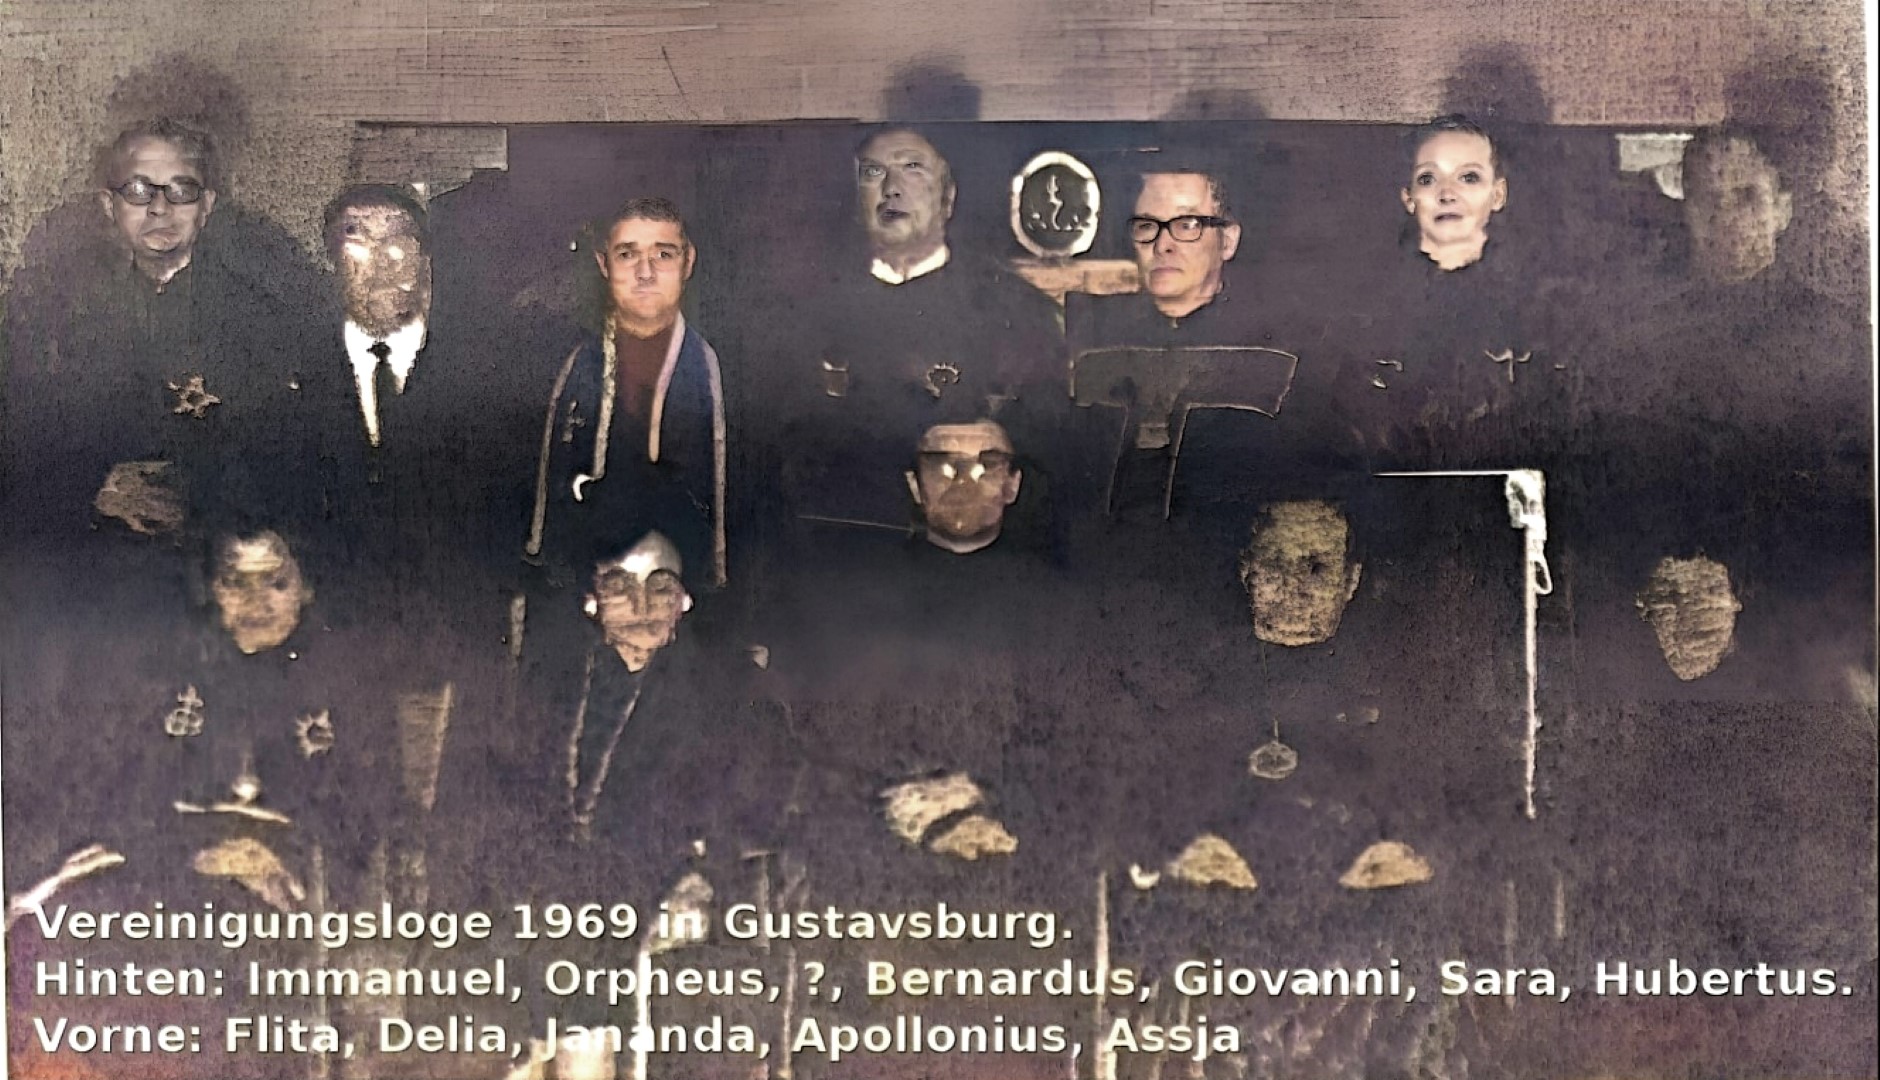 Vereinigungsloge der Fraternitas Saturni 1969 in Gustavsburg. Johannes Maikowski, Horst Kropp, Karl Wedler, Irmgard Maikowski, Walter jantschik